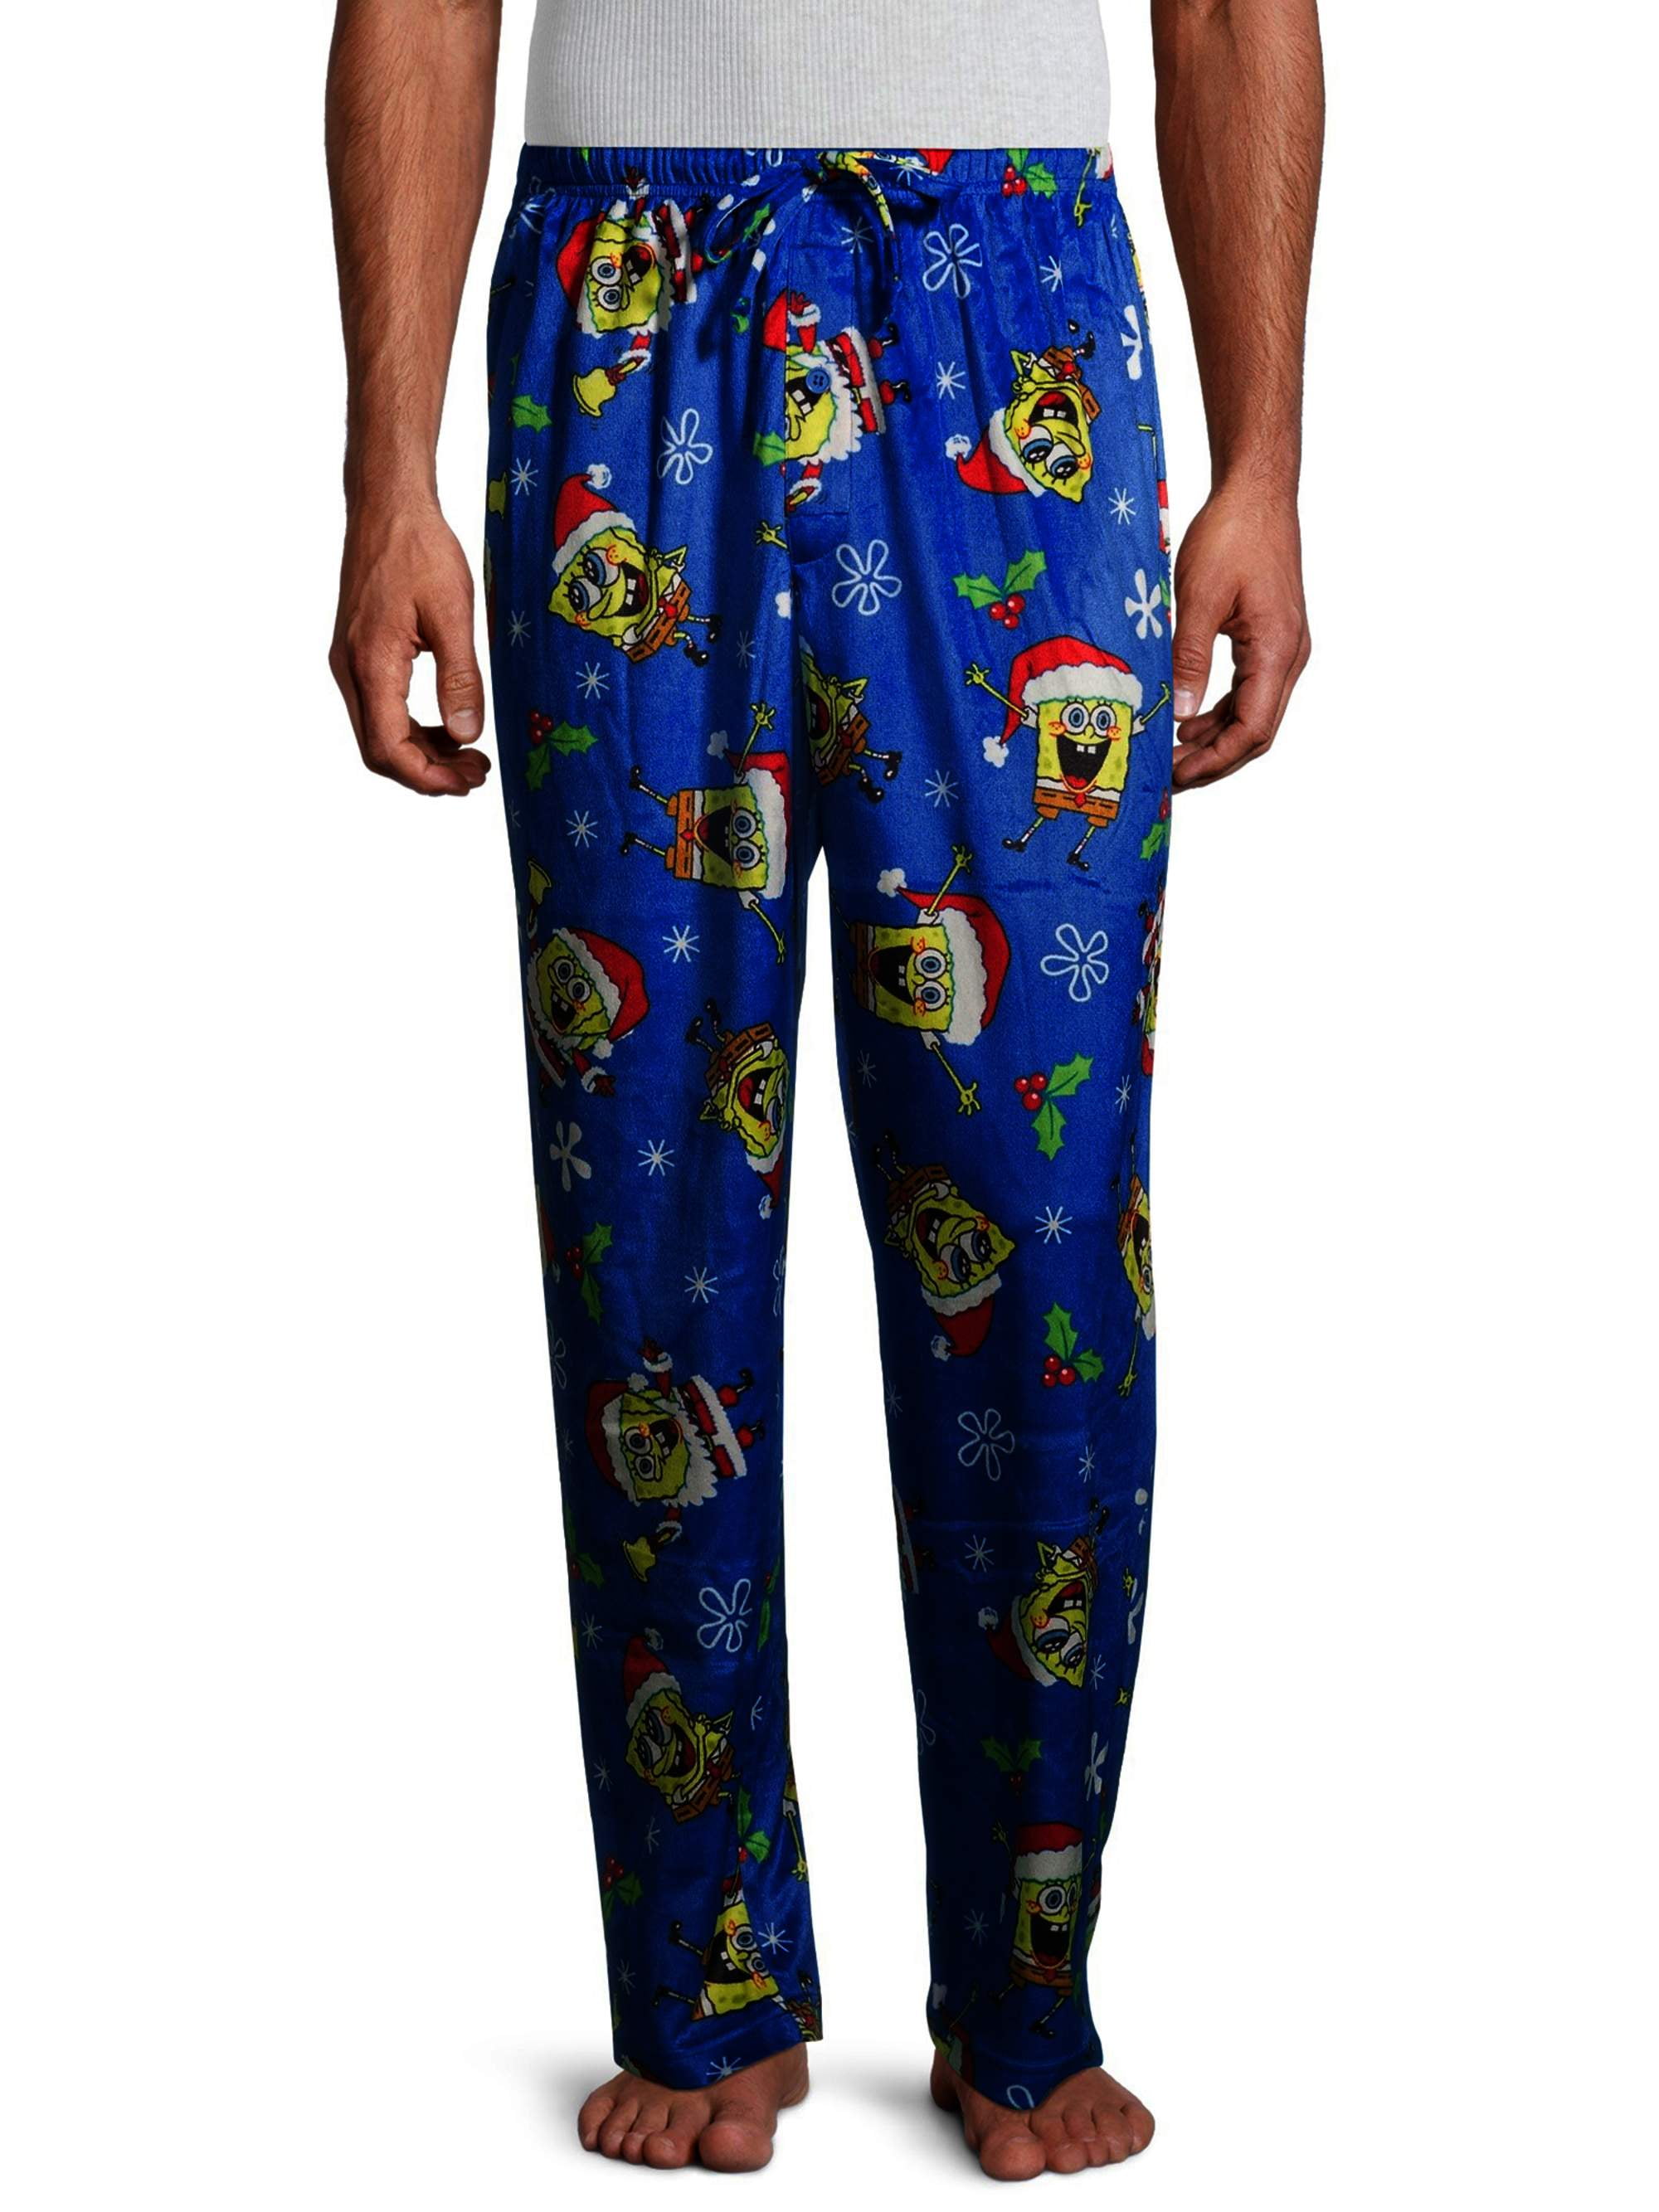 Nickelodeon - SpongeBob SquarePants Men's Christmas Pajama Pants ...